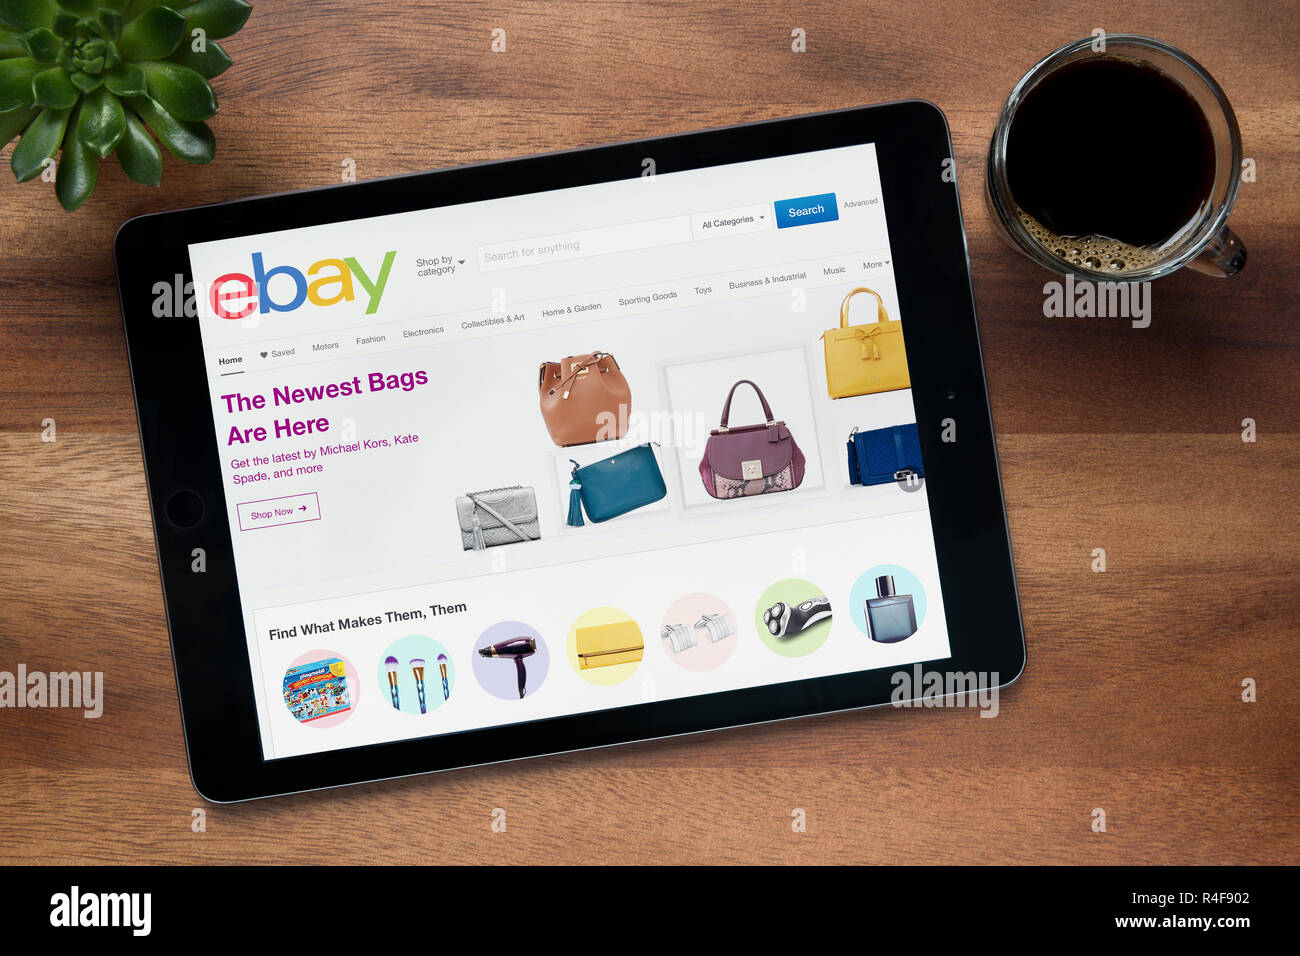 Le site d'ebay est vu sur un iPad tablet, sur une table en bois avec une machine à expresso et d'une plante (usage éditorial uniquement). Banque D'Images